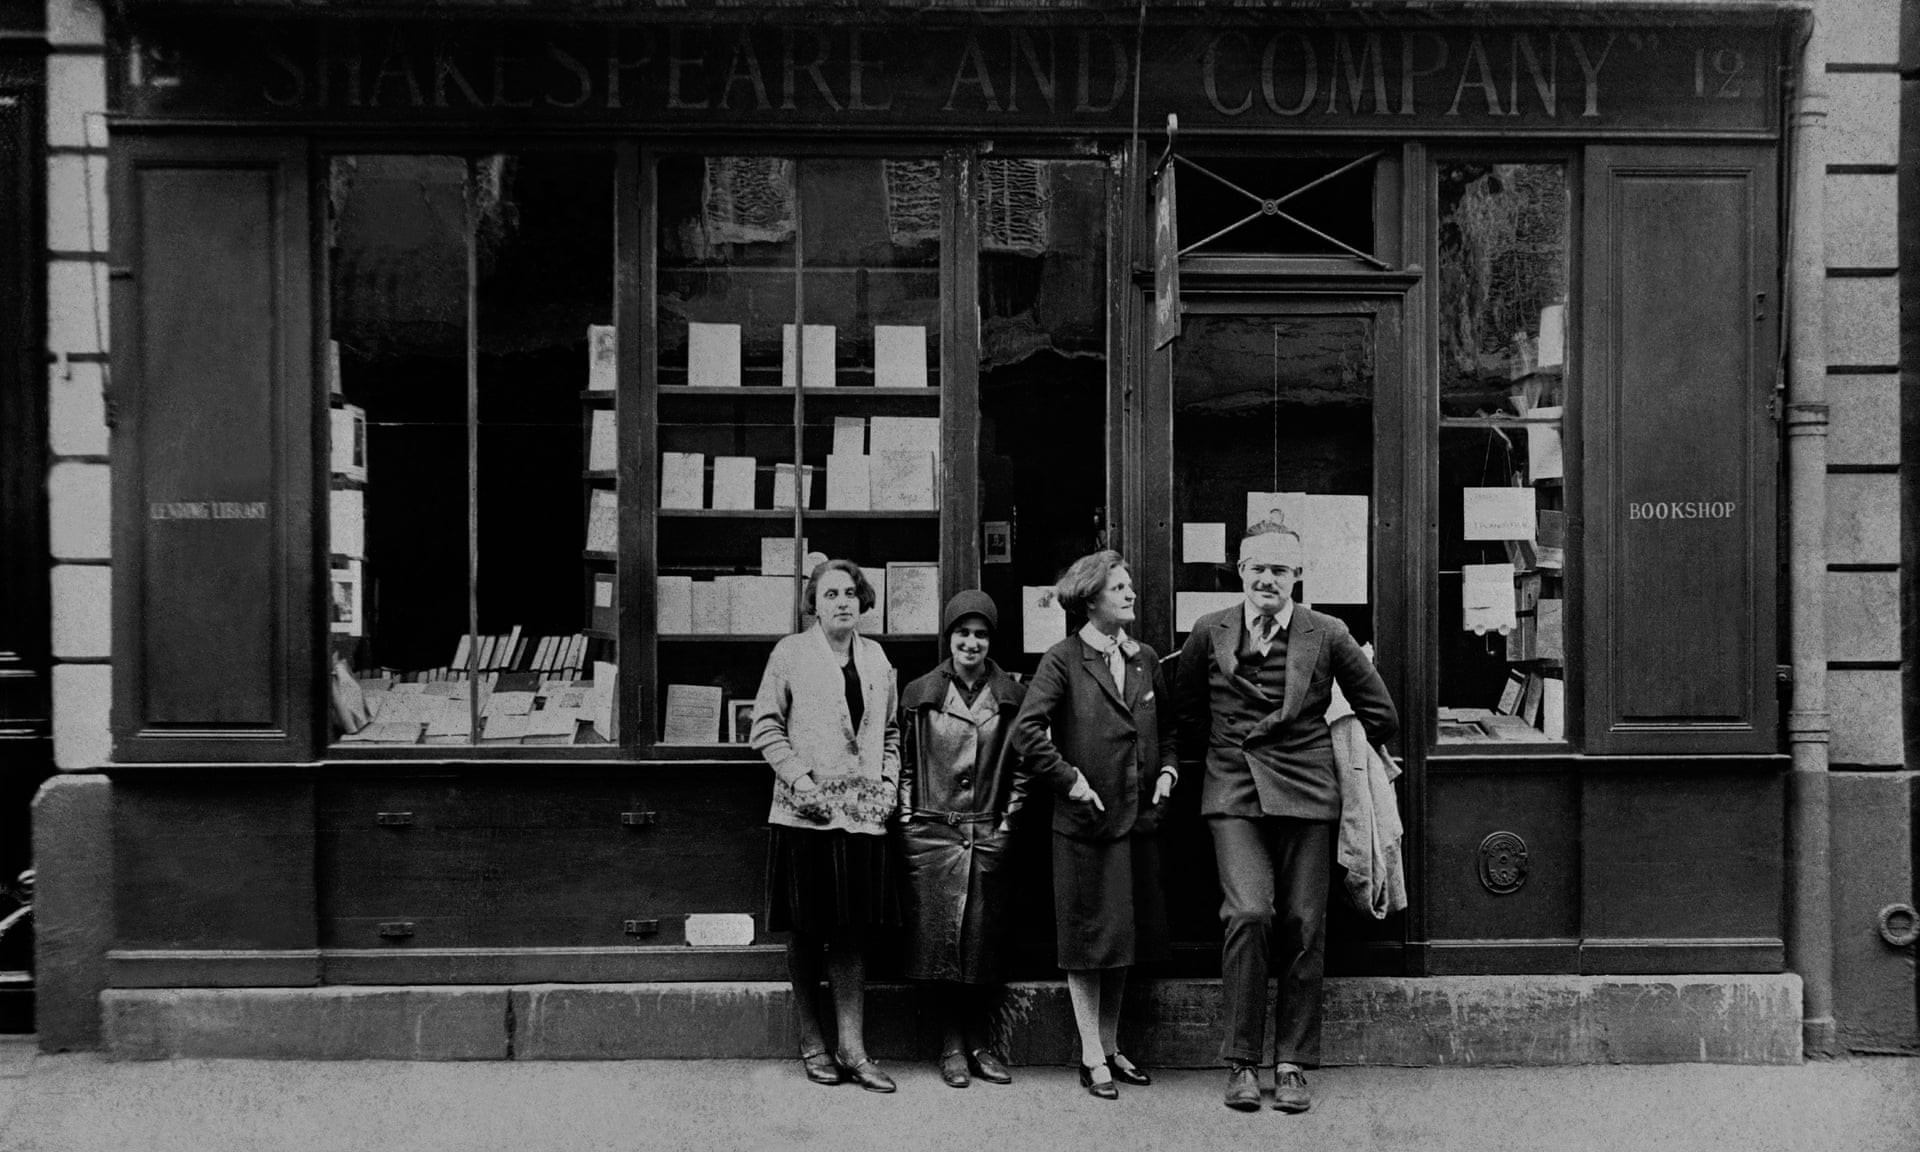 Ernest Hemingway e três mulheres, incluindo Sylvia Beach (fundadora da livraria) em frente à loja em 1926 (Foto: Coll Lausat / Divulgação)